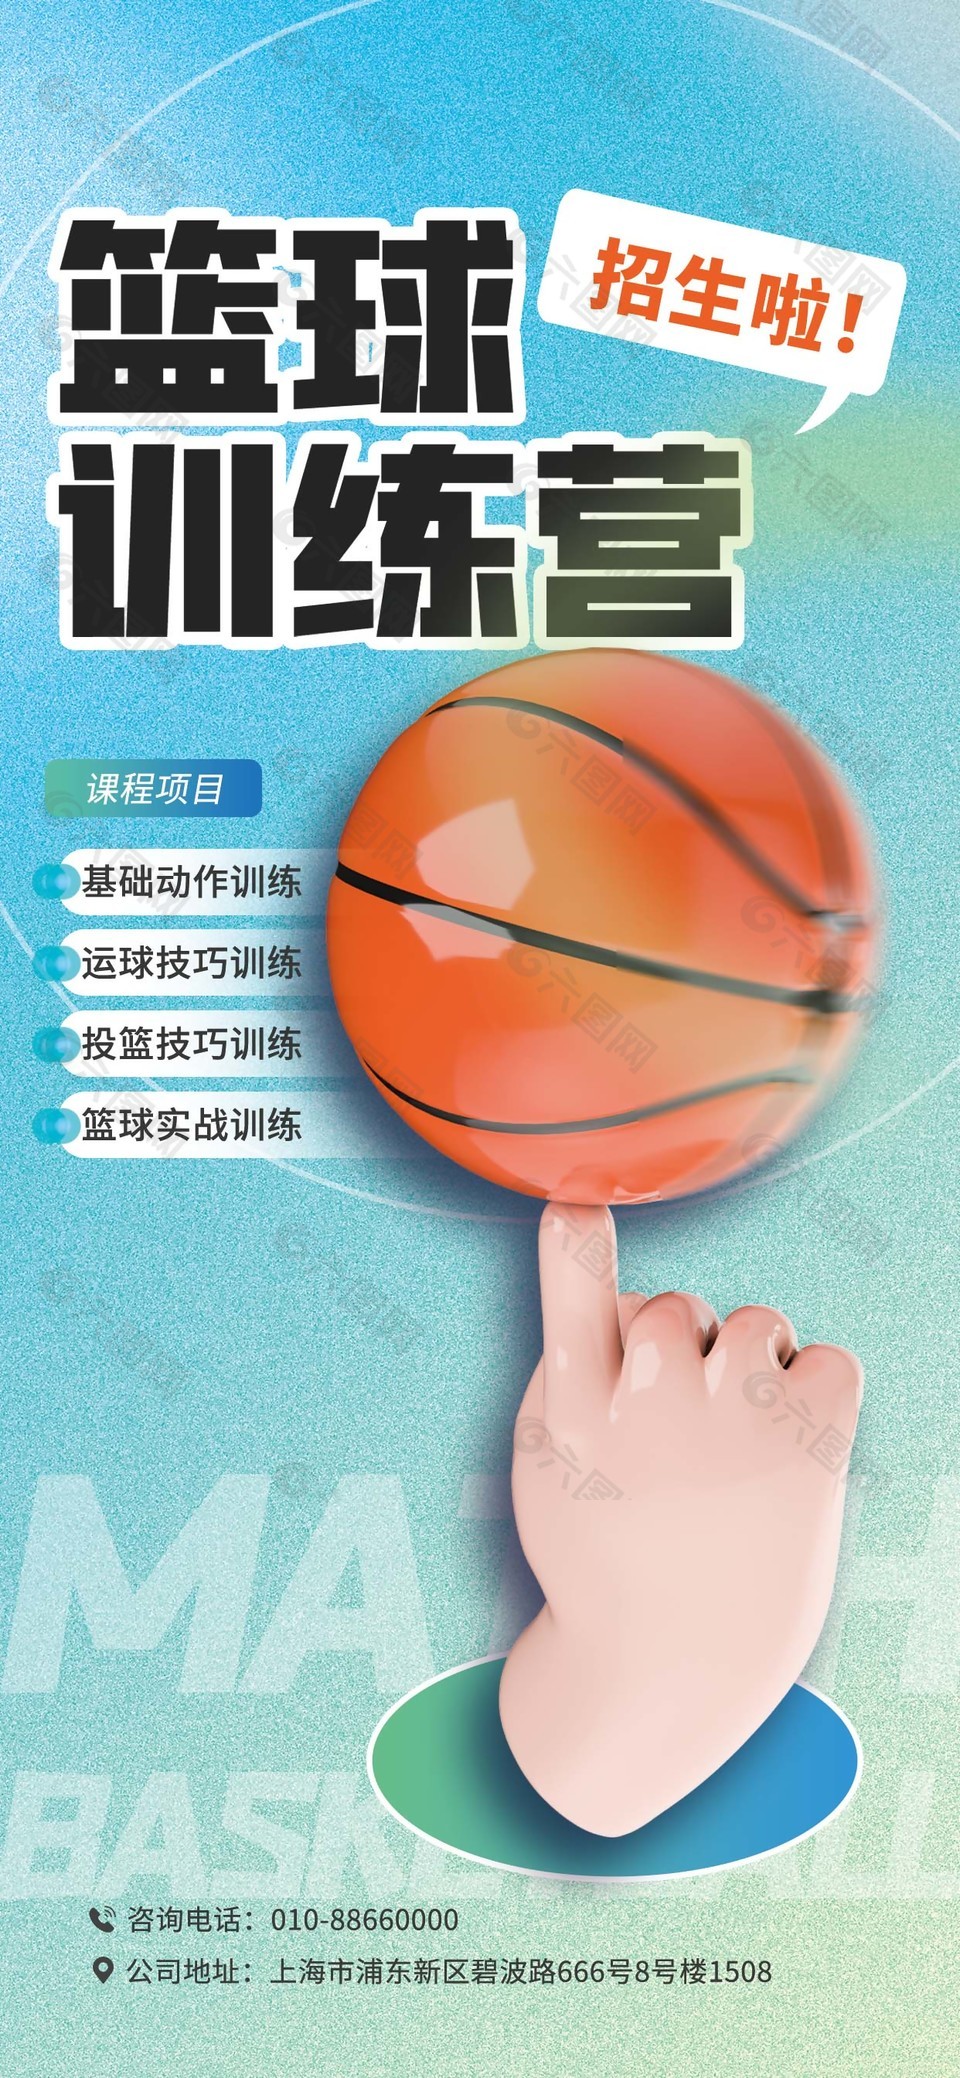 篮球训练营招生长图弥散风海报下载